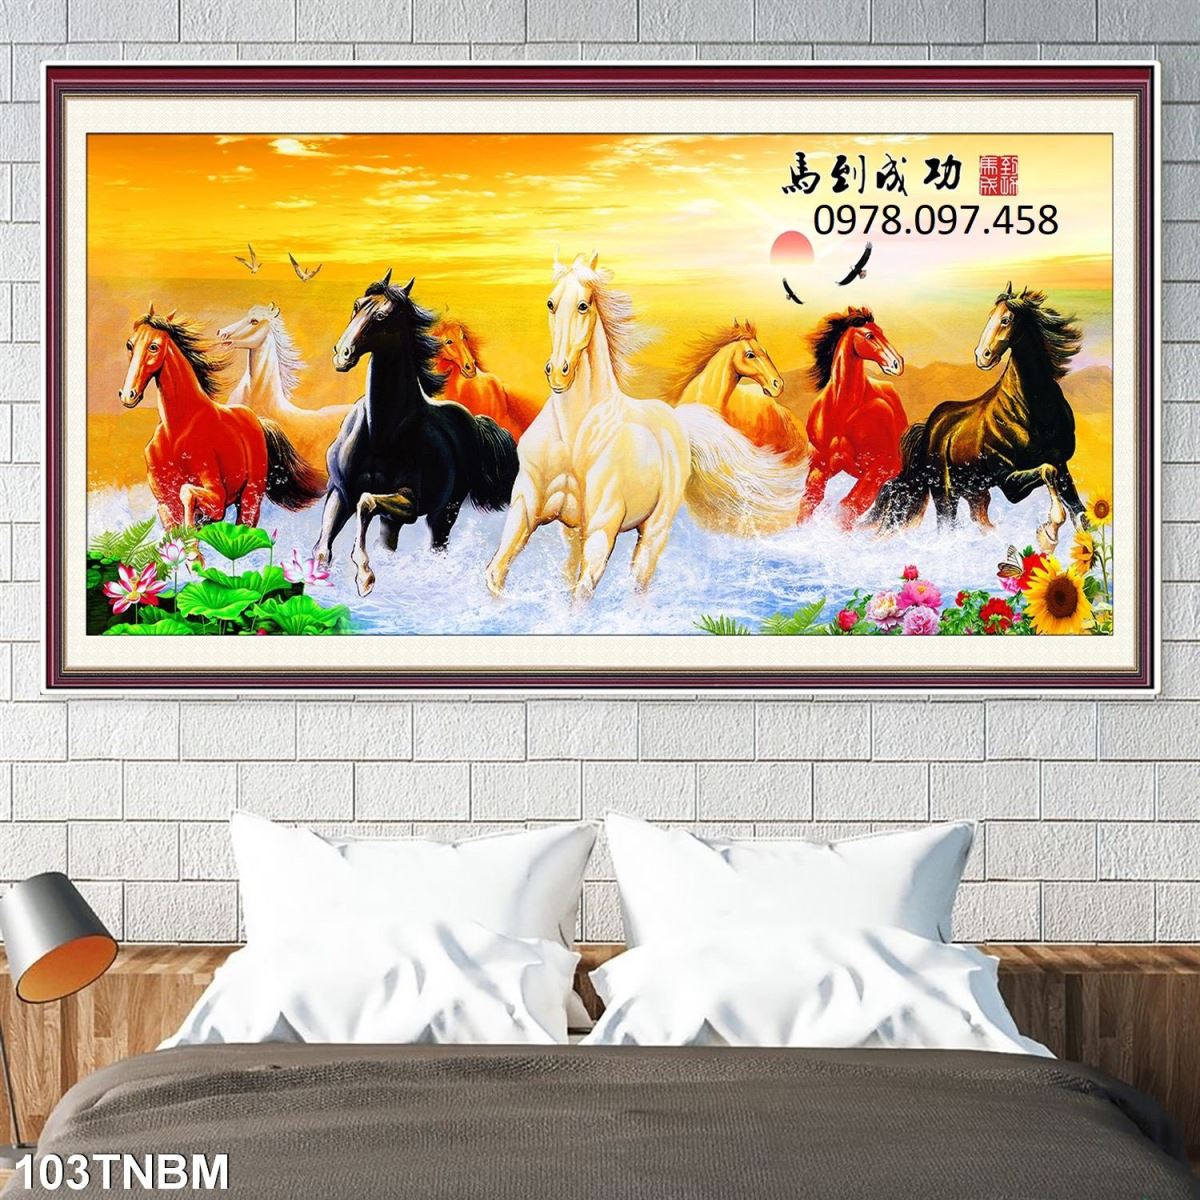 Gạch tranh 3d in hình 8 chú ngựa